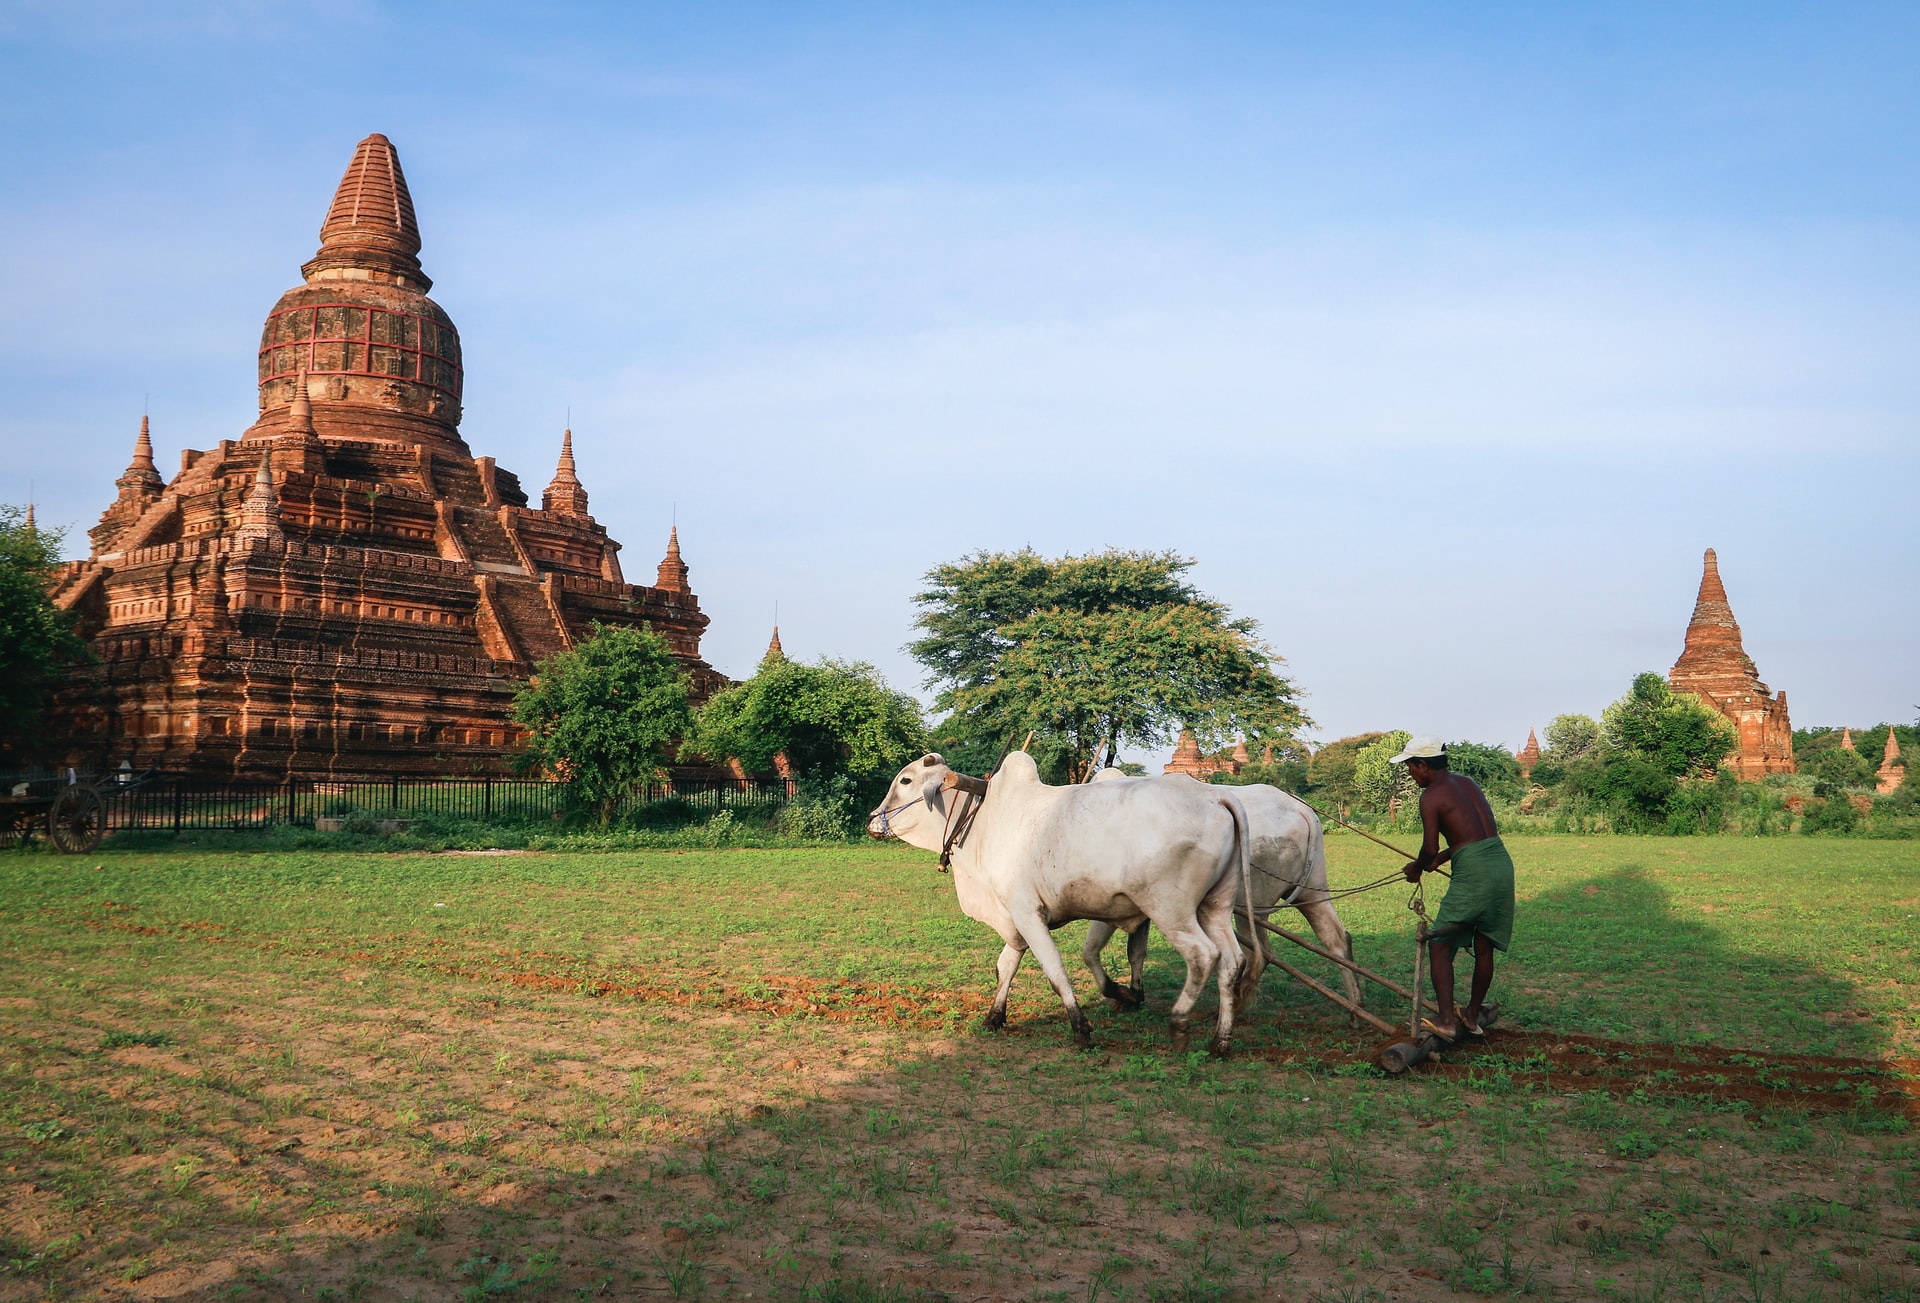 UNESCO site Bagan in Myanmar